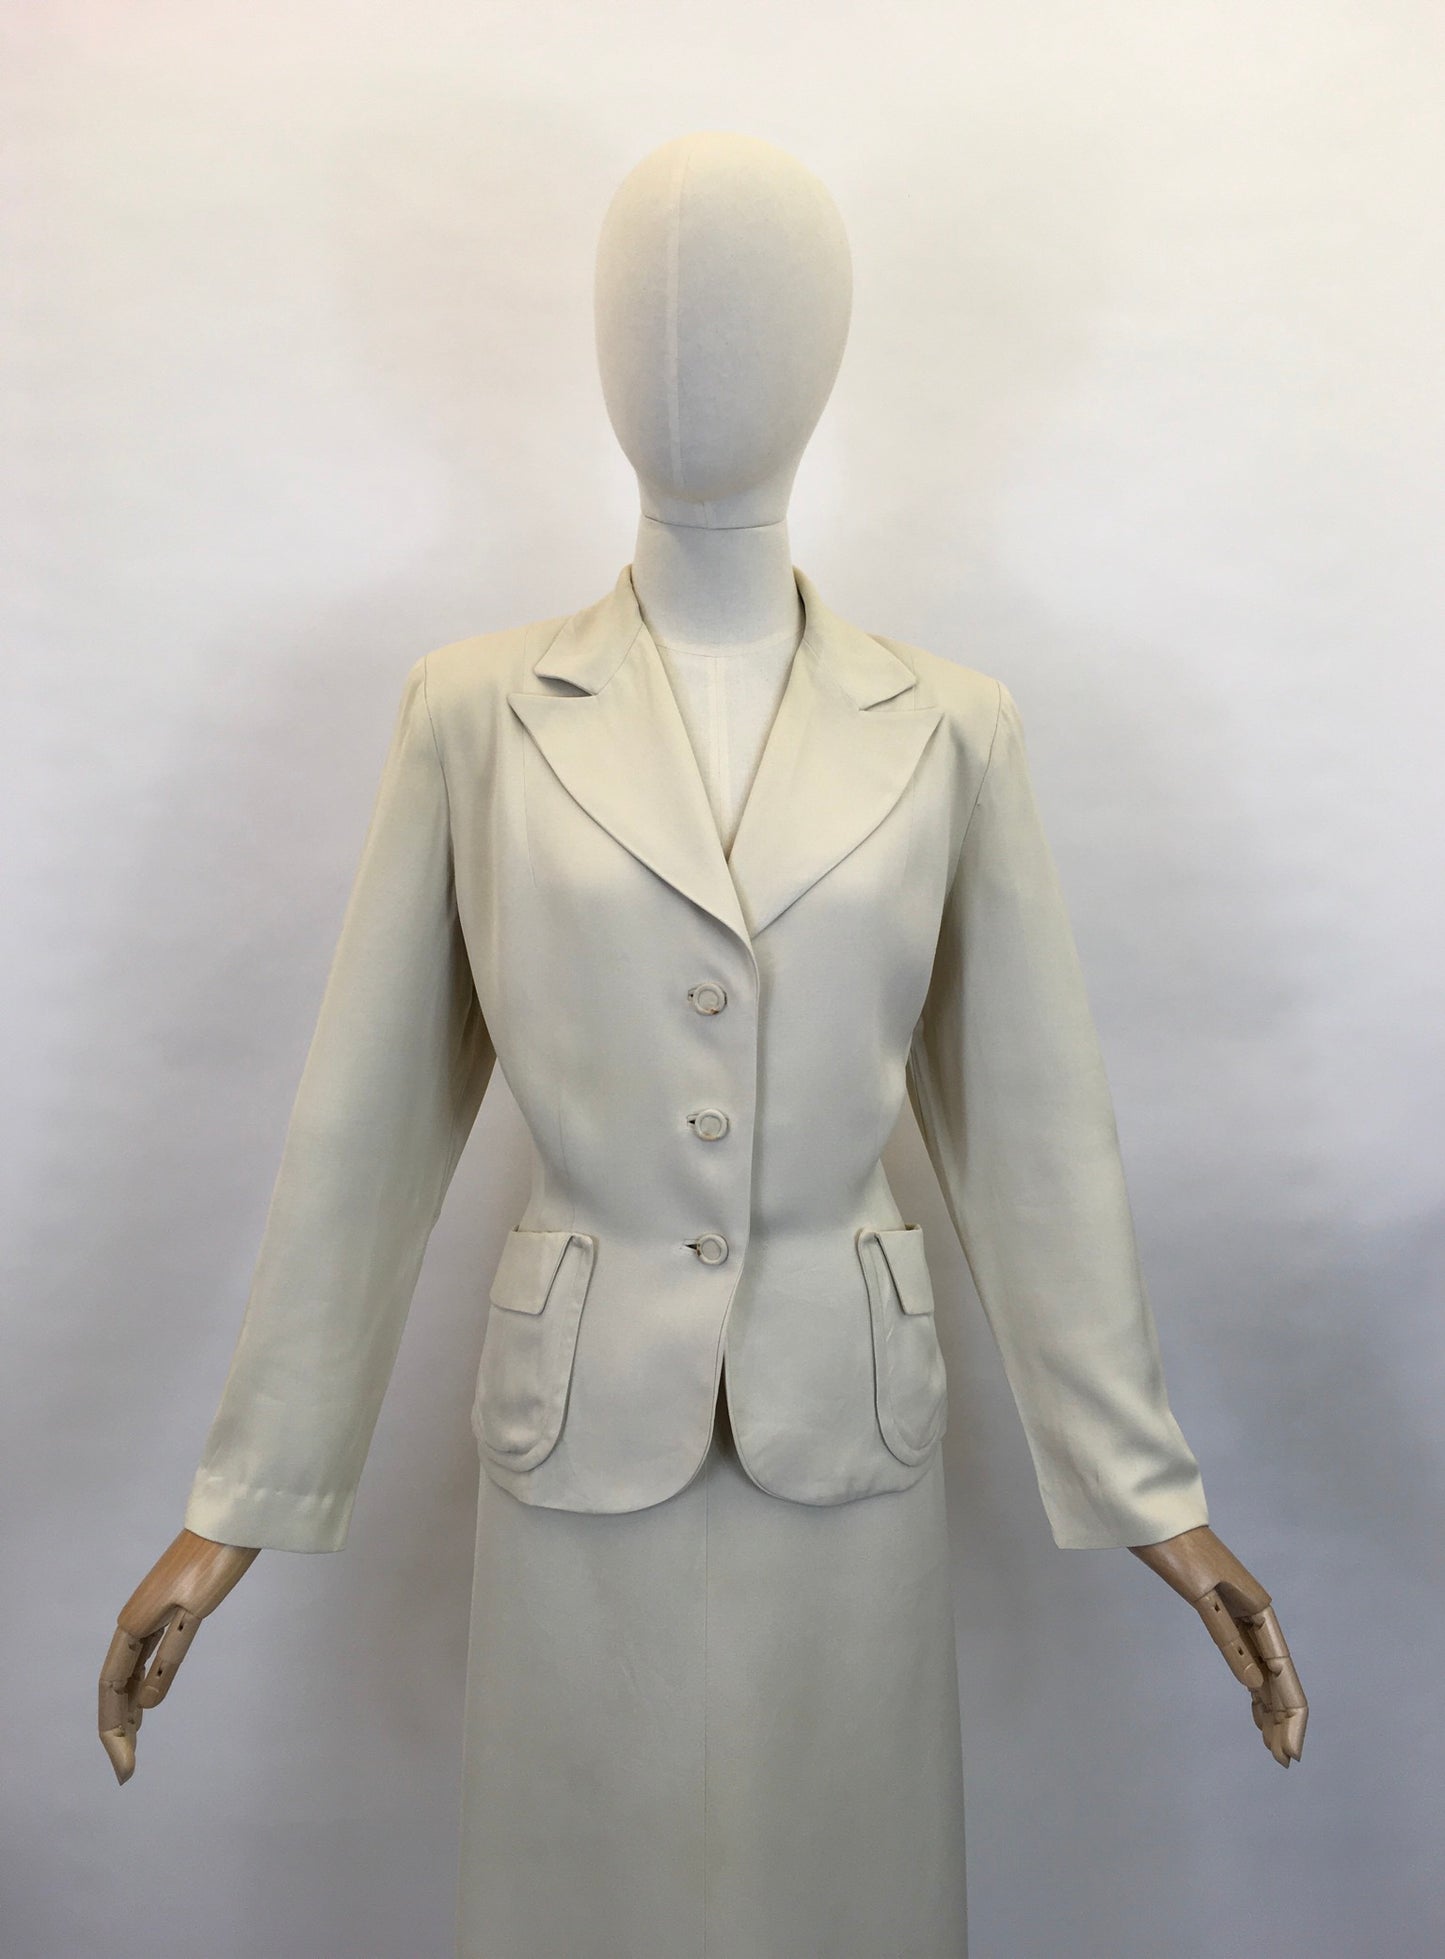 Original 1940’s STUNNING Cream 2pc Suit - With Exquisite Iconic 40’s Tailoring